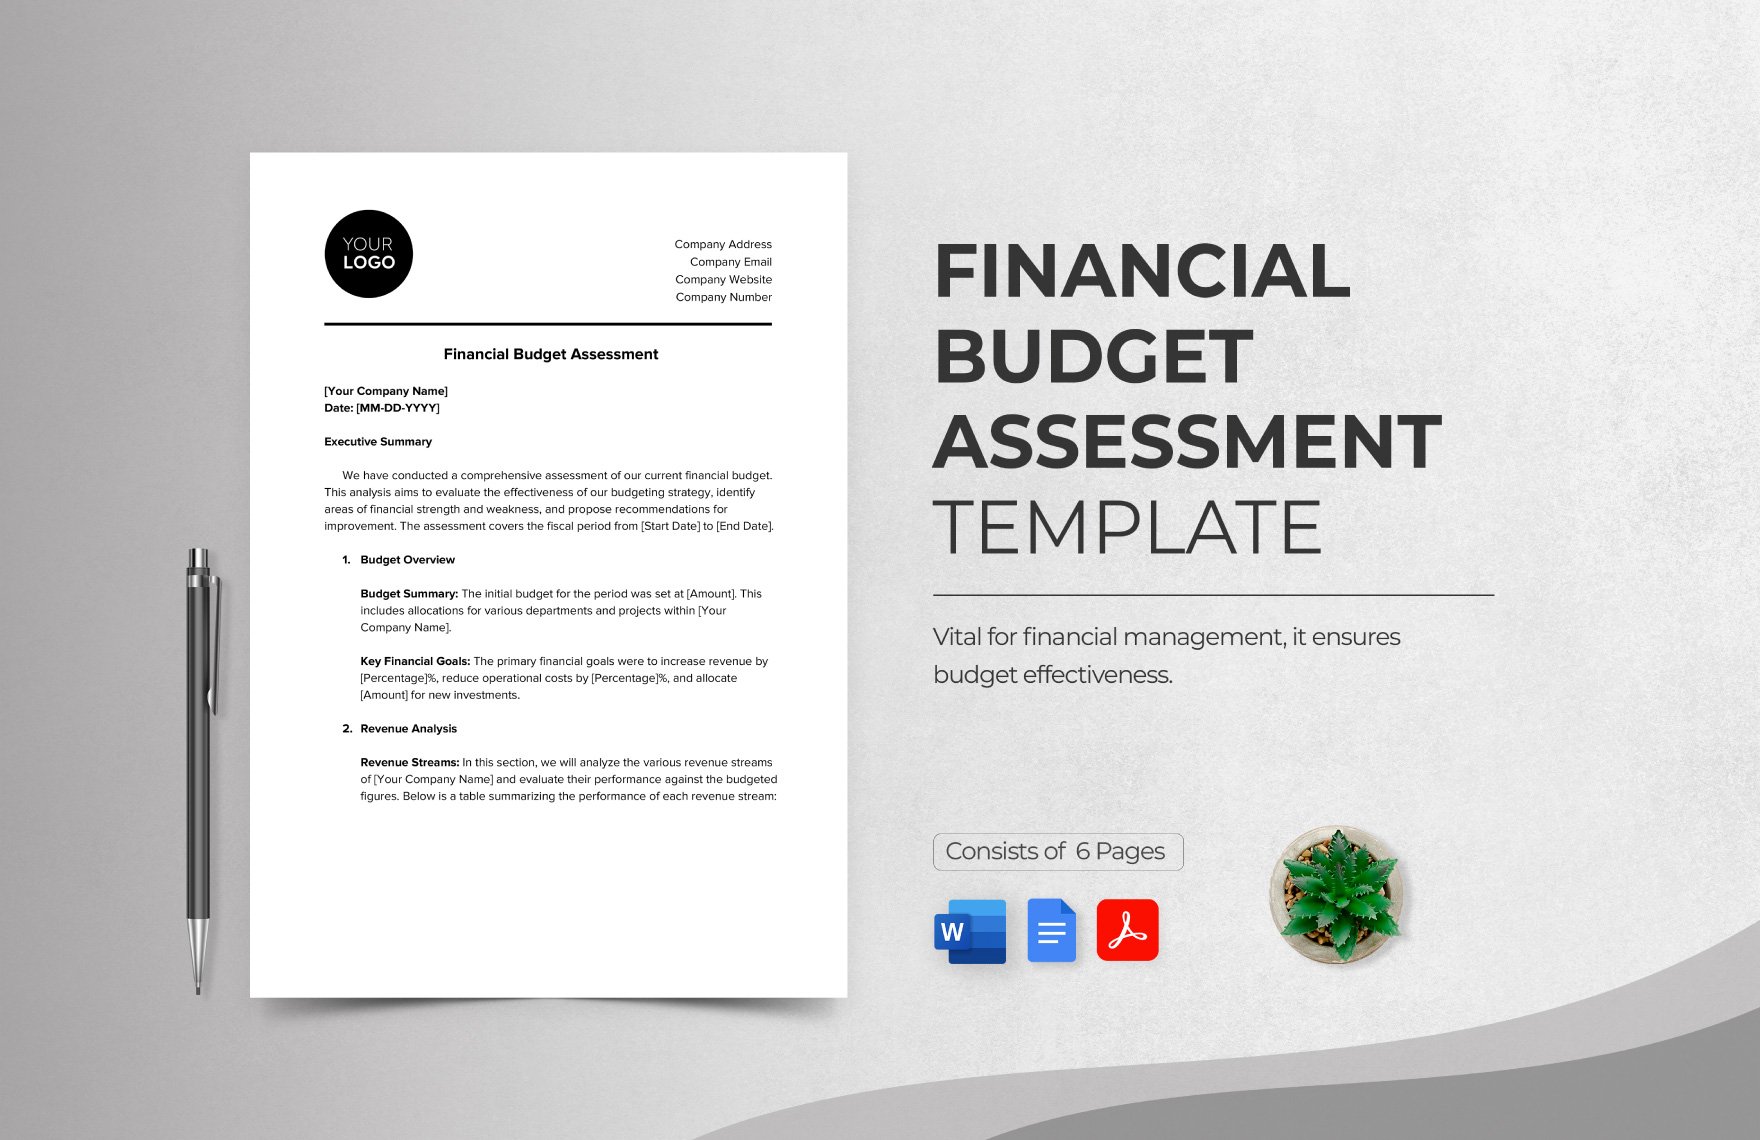 Financial Budget Assessment Template